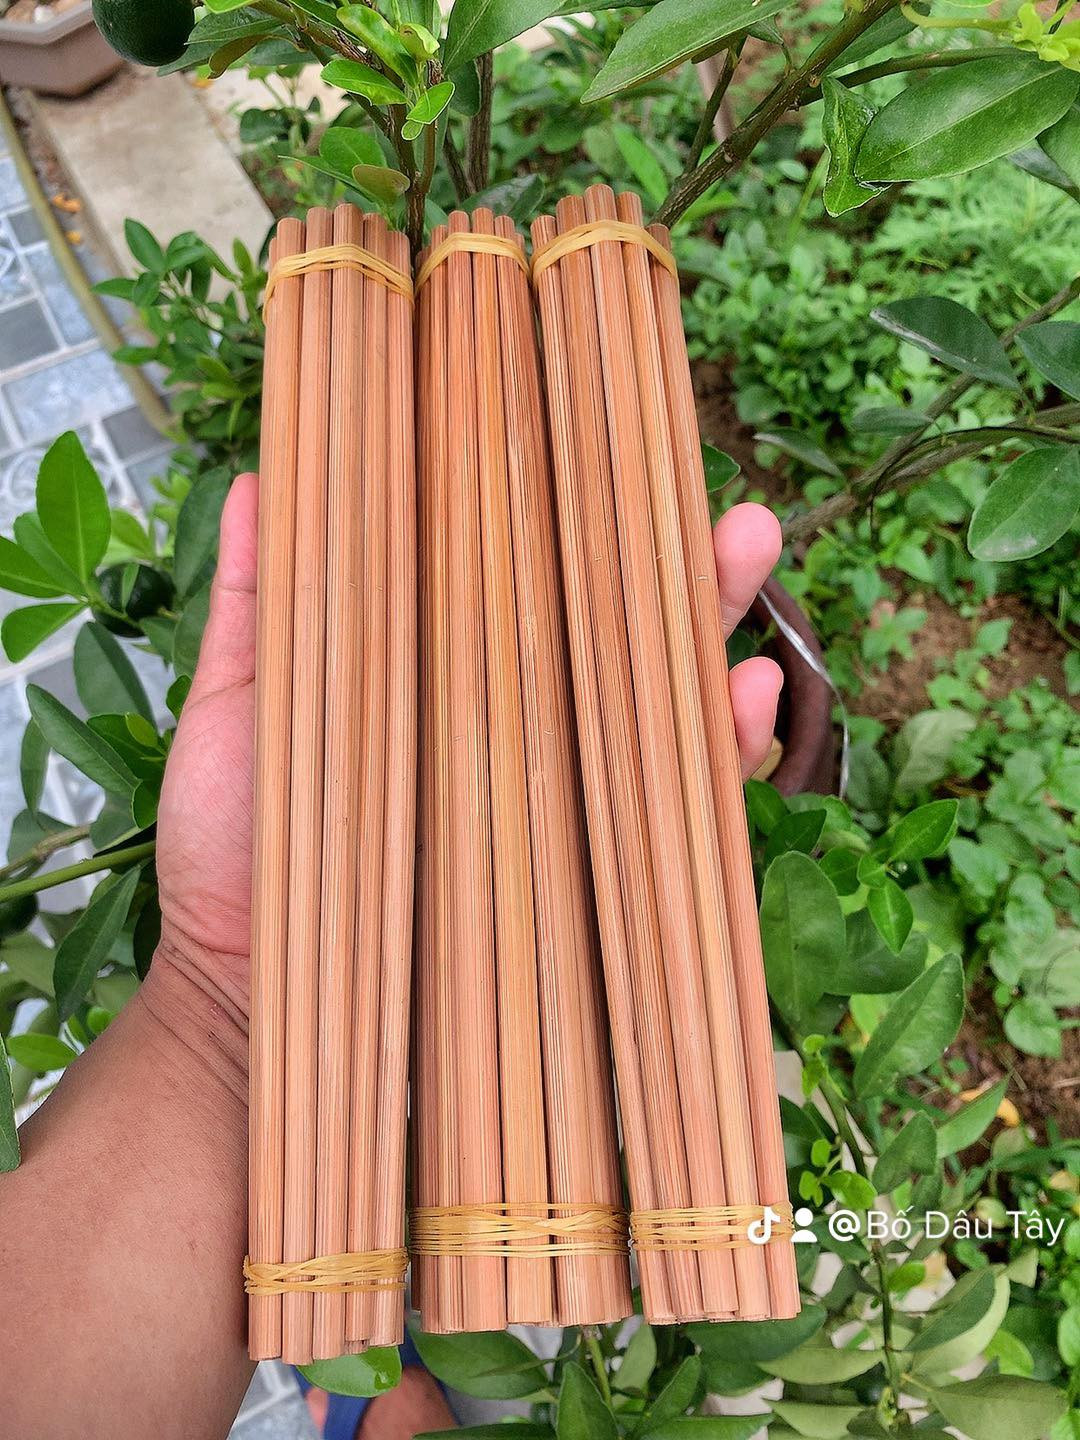 Bộ 10 Đôi Đũa Tre TRE VIỆT Tự Nhiên An Cao Cấp, An Toàn Cho Sức Khỏe- SNF Bamboo and Craft Mới